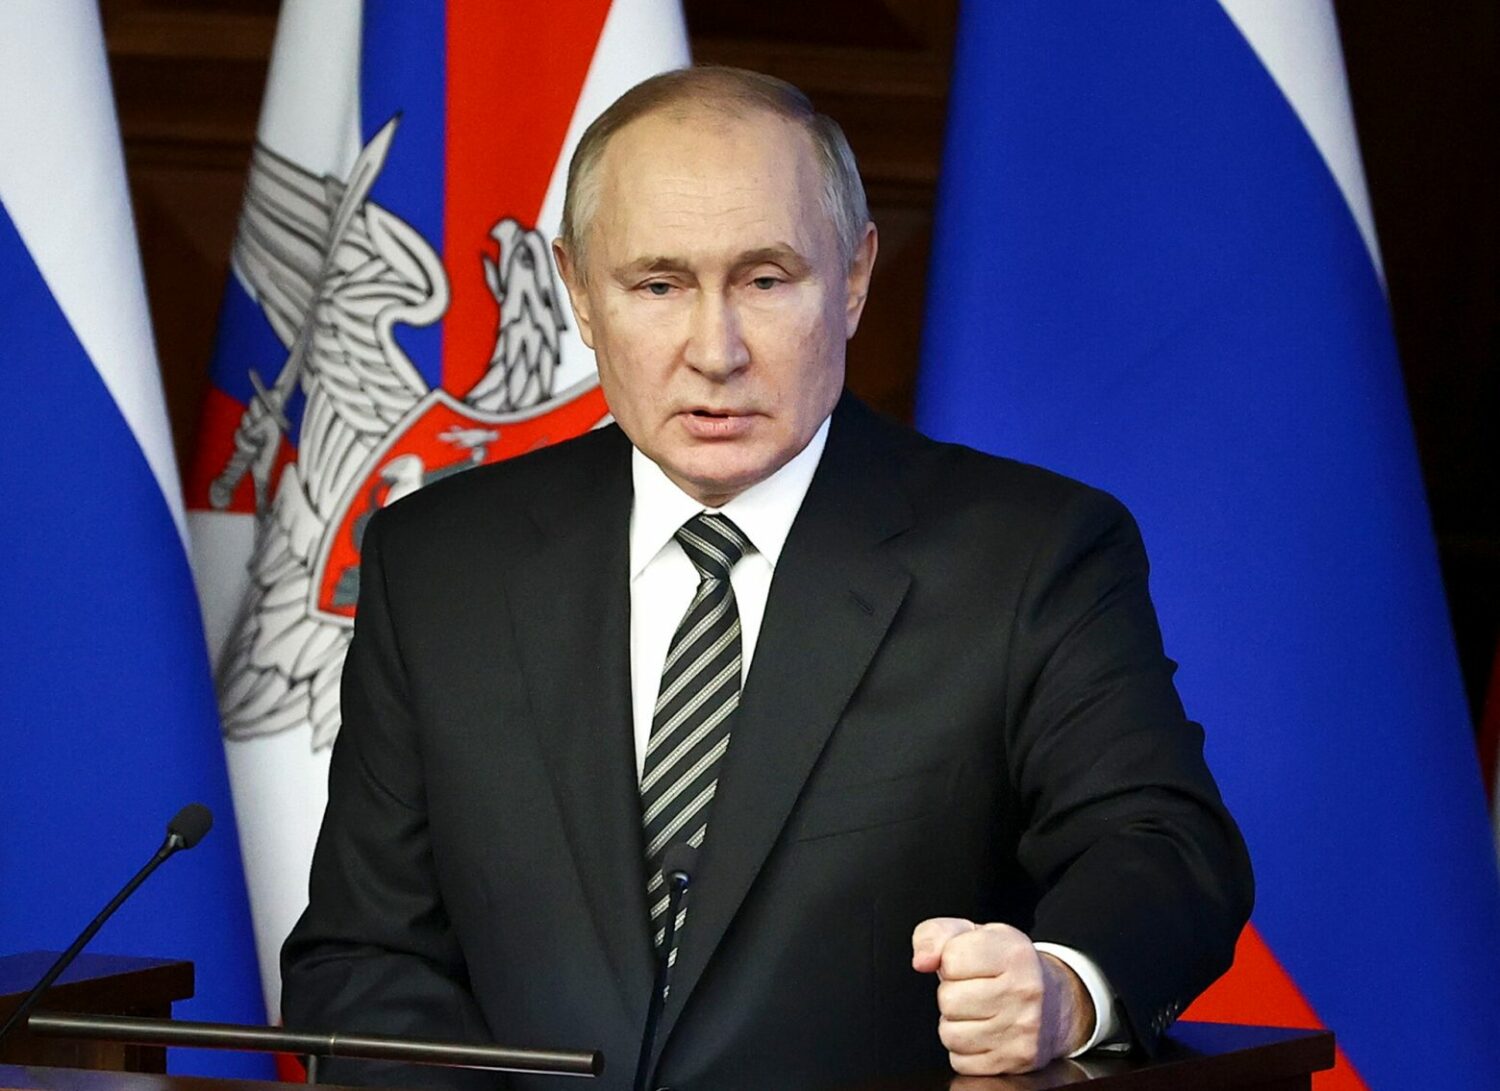 Η Ρωσία απειλεί τις ΗΠΑ: «Απρόβλεπτες συνέπειες» αν εξοπλίσετε την Ουκρανία